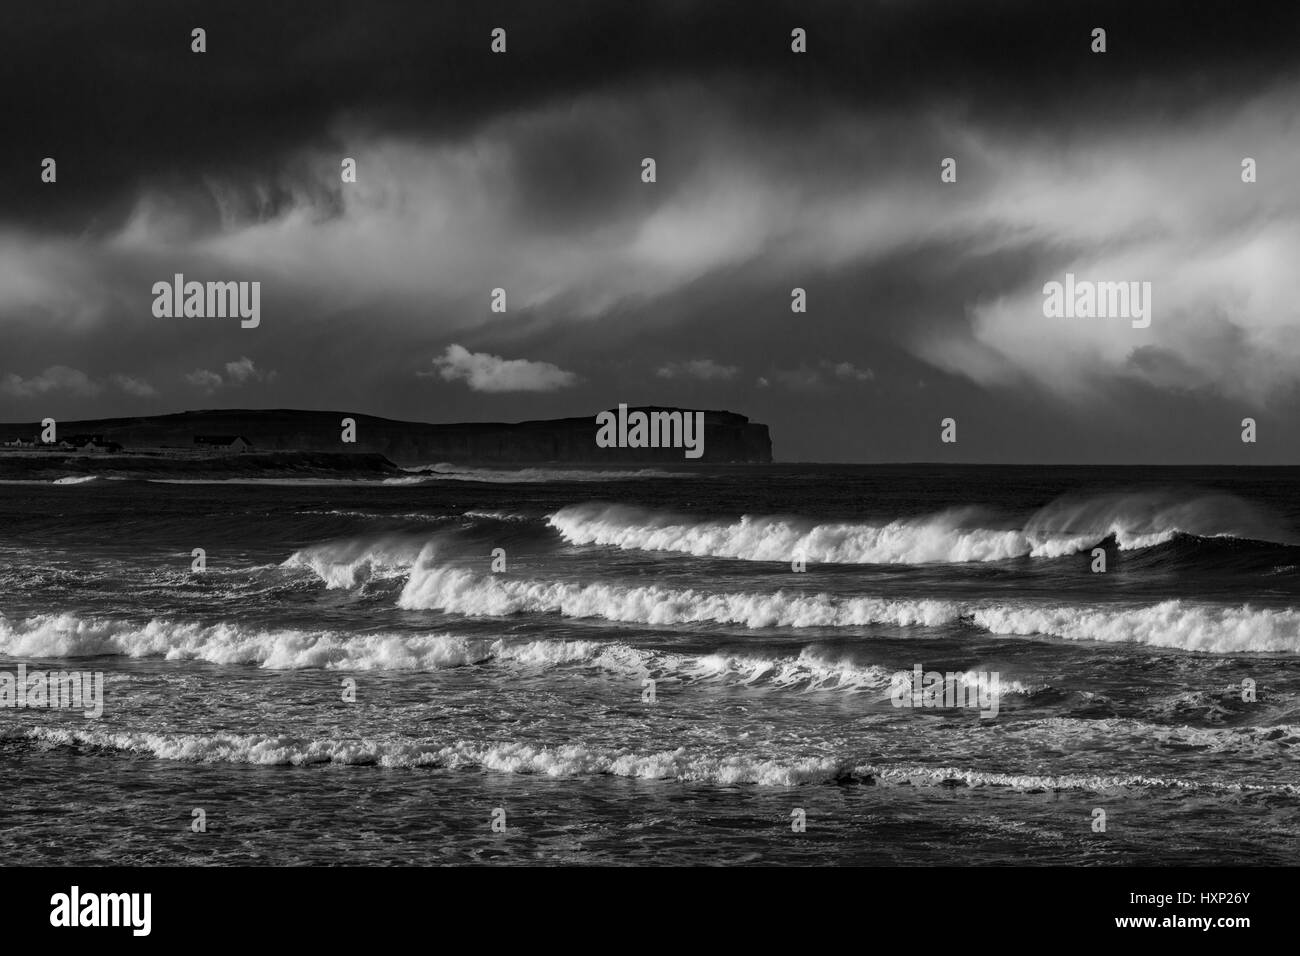 Testa di Dunnet e tempestoso mare nei pressi del villaggio di Mey, Caithness in Scozia, Regno Unito Foto Stock